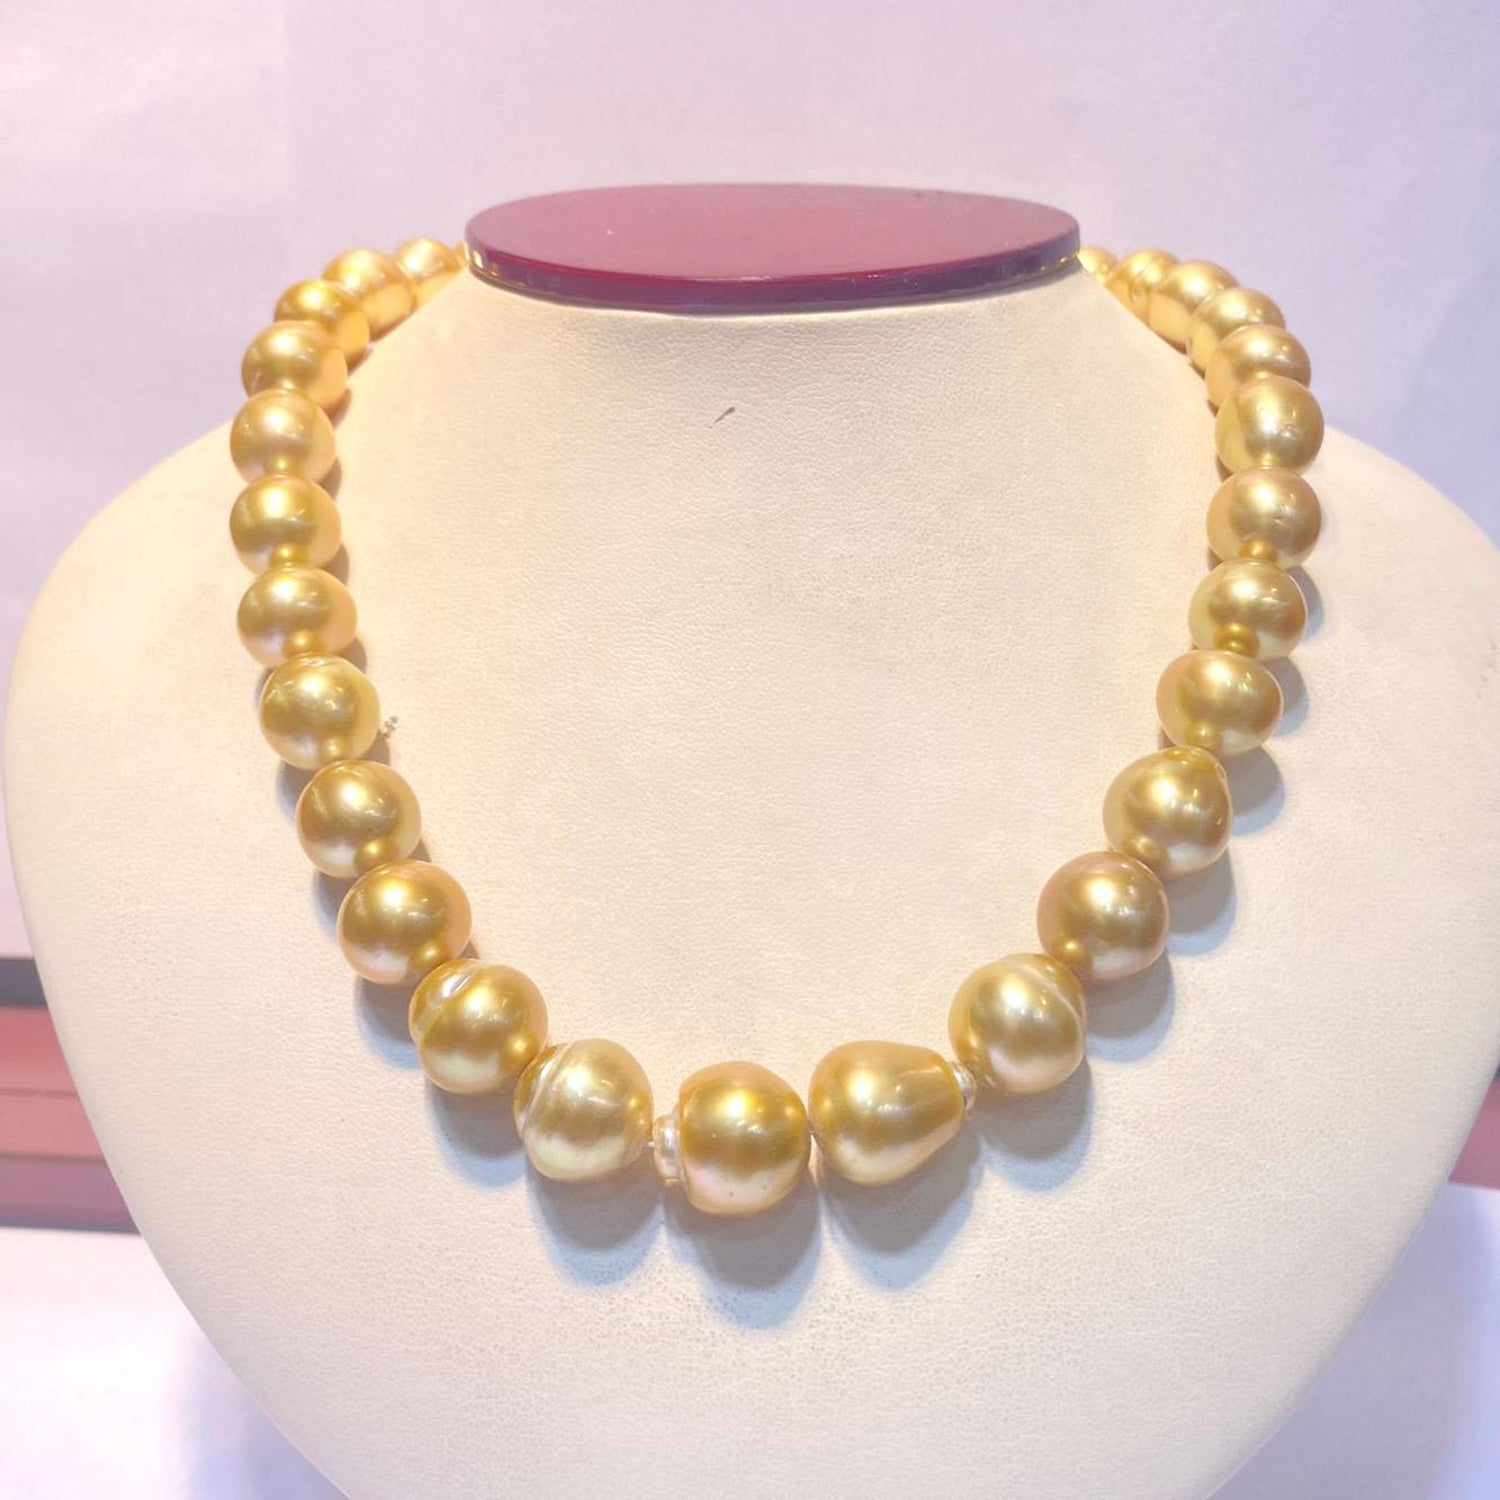 12-14mm south sea baroque multicolor pearl necklace 18inch 